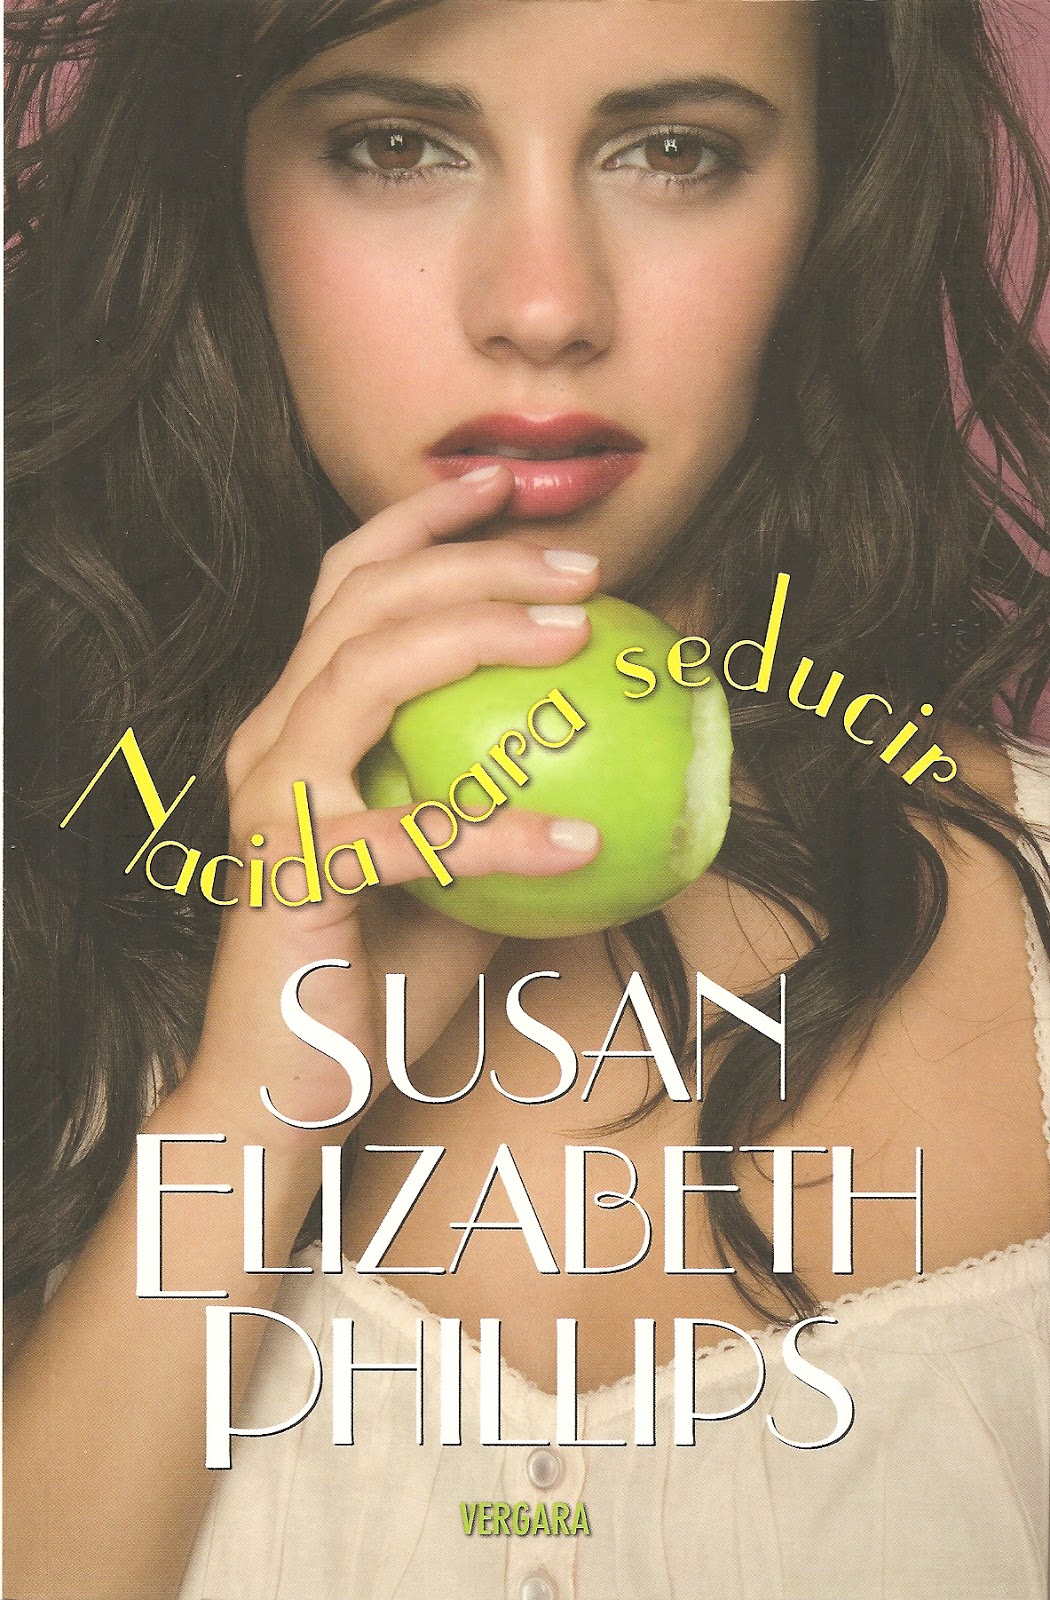 Nacida2Bpara2Bseducir - Nacida para seducir (Susan Elizabeth Phillips) - (Audiolibro Voz Humana)